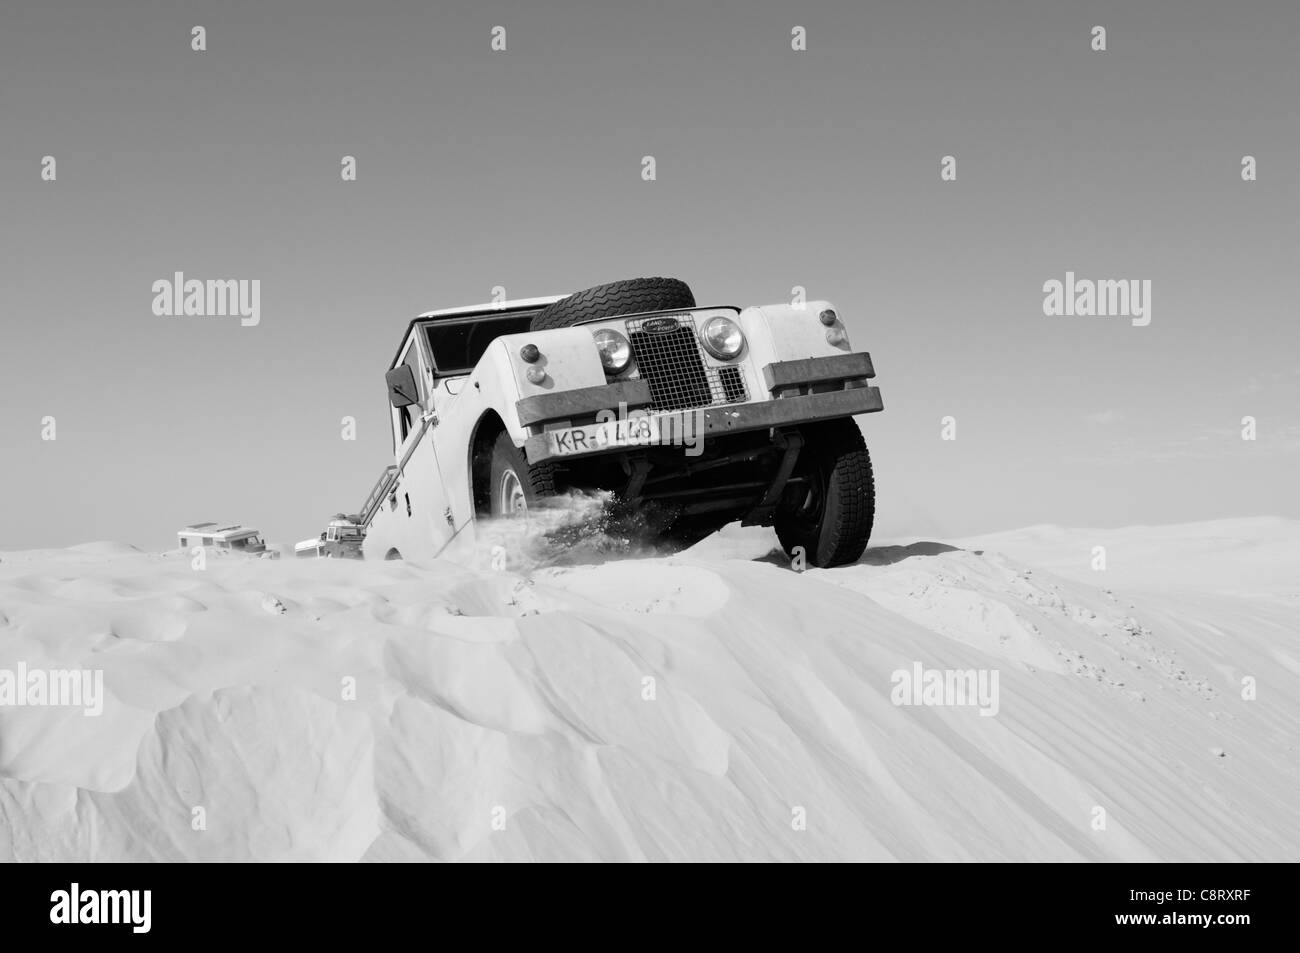 Afrika, Tunesien, nr. Tembaine. Wüste Reisende fahren seine 1964 Land Rover Serie 2a LKW-Kabine durch eine Sandfield nah an... Stockfoto